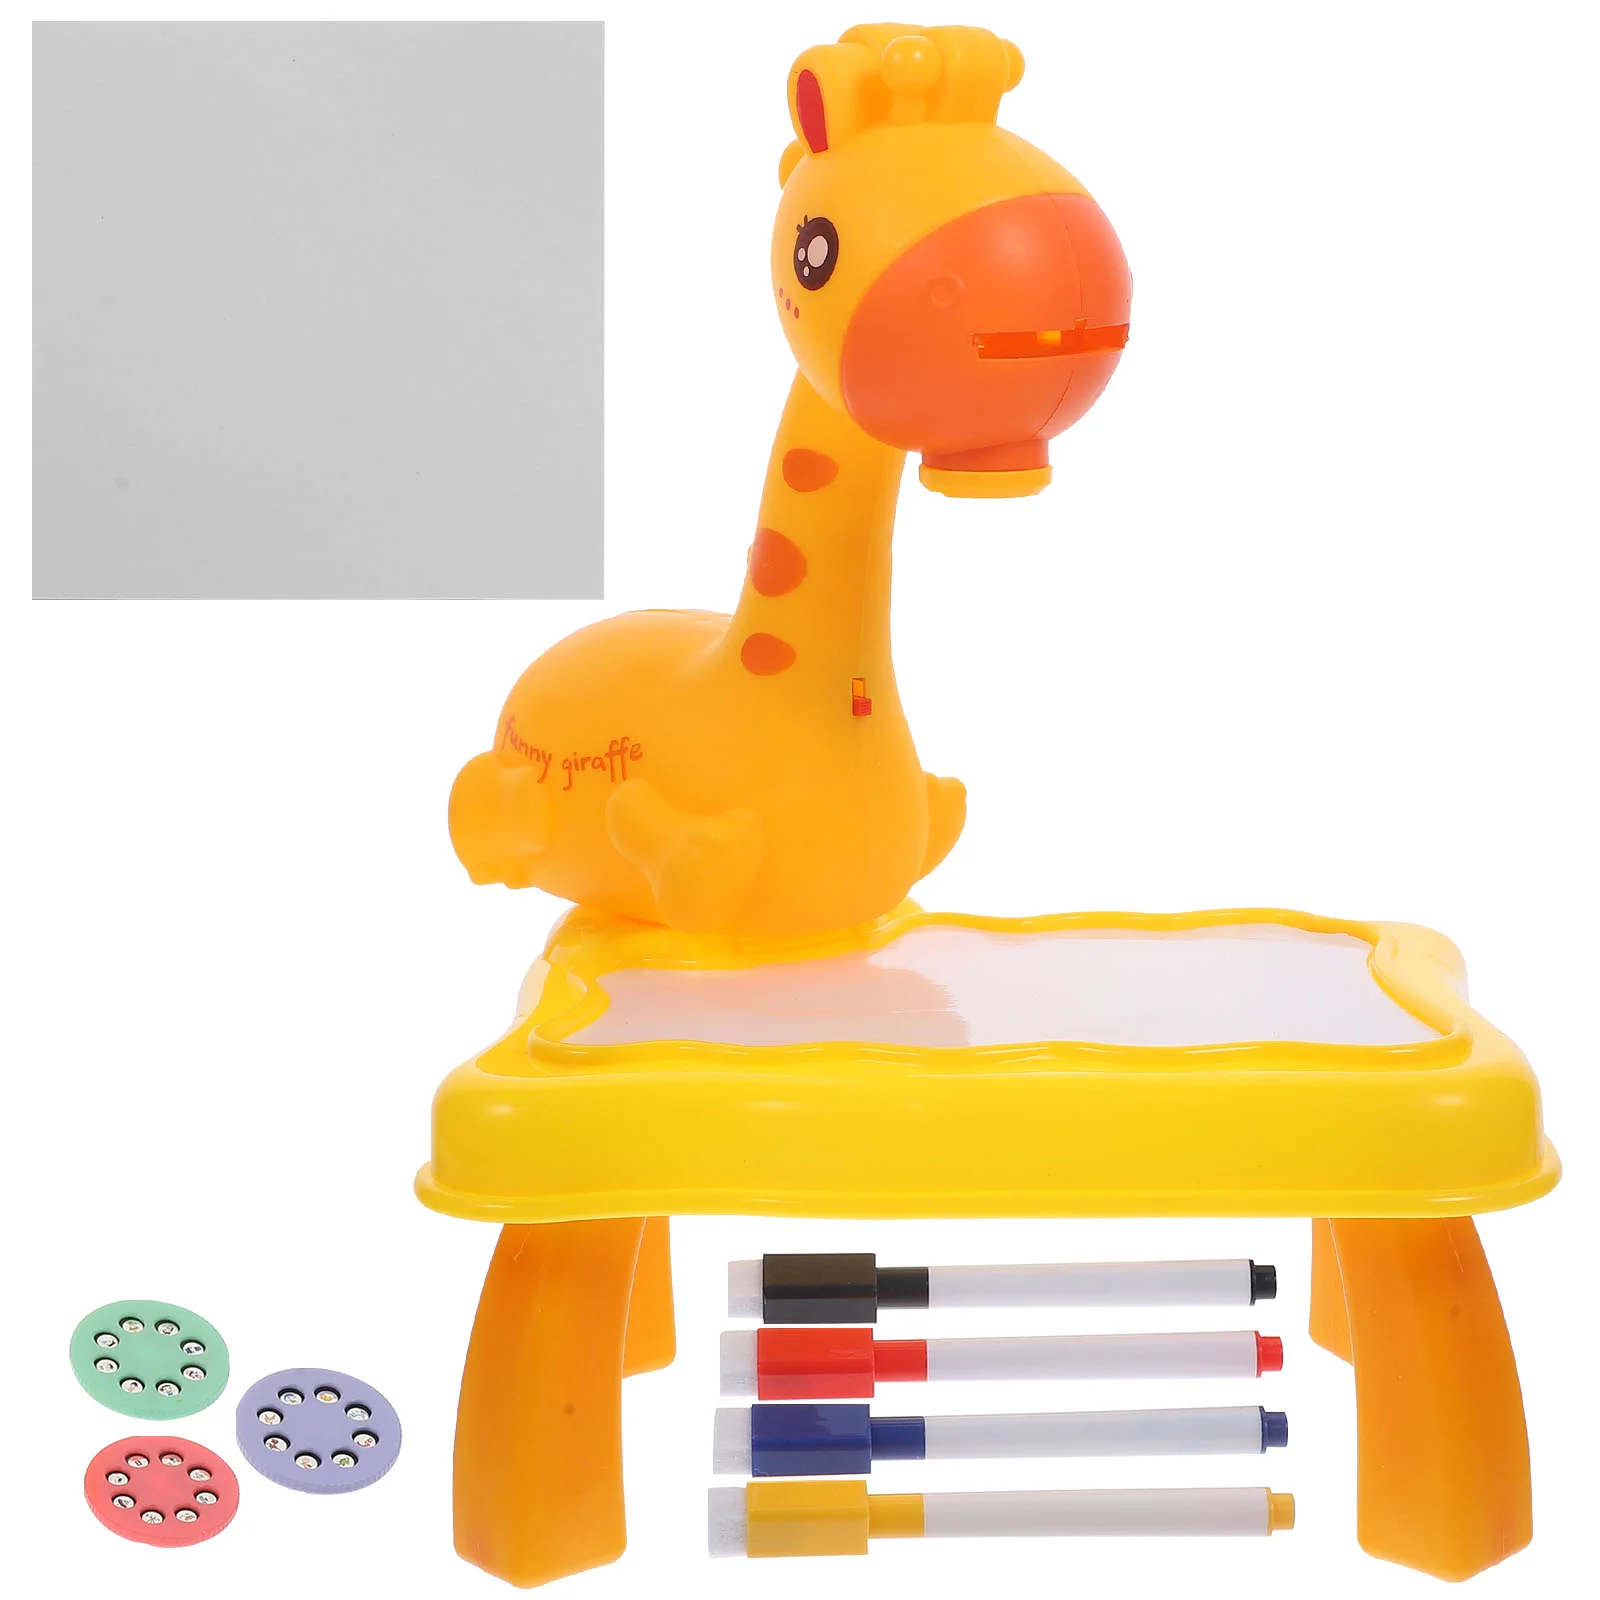 

Проекционный стол для рисования, детские игрушки, детский проектор, игровой набор с героями мультфильмов, пластиковый смешной обучающий инструмент